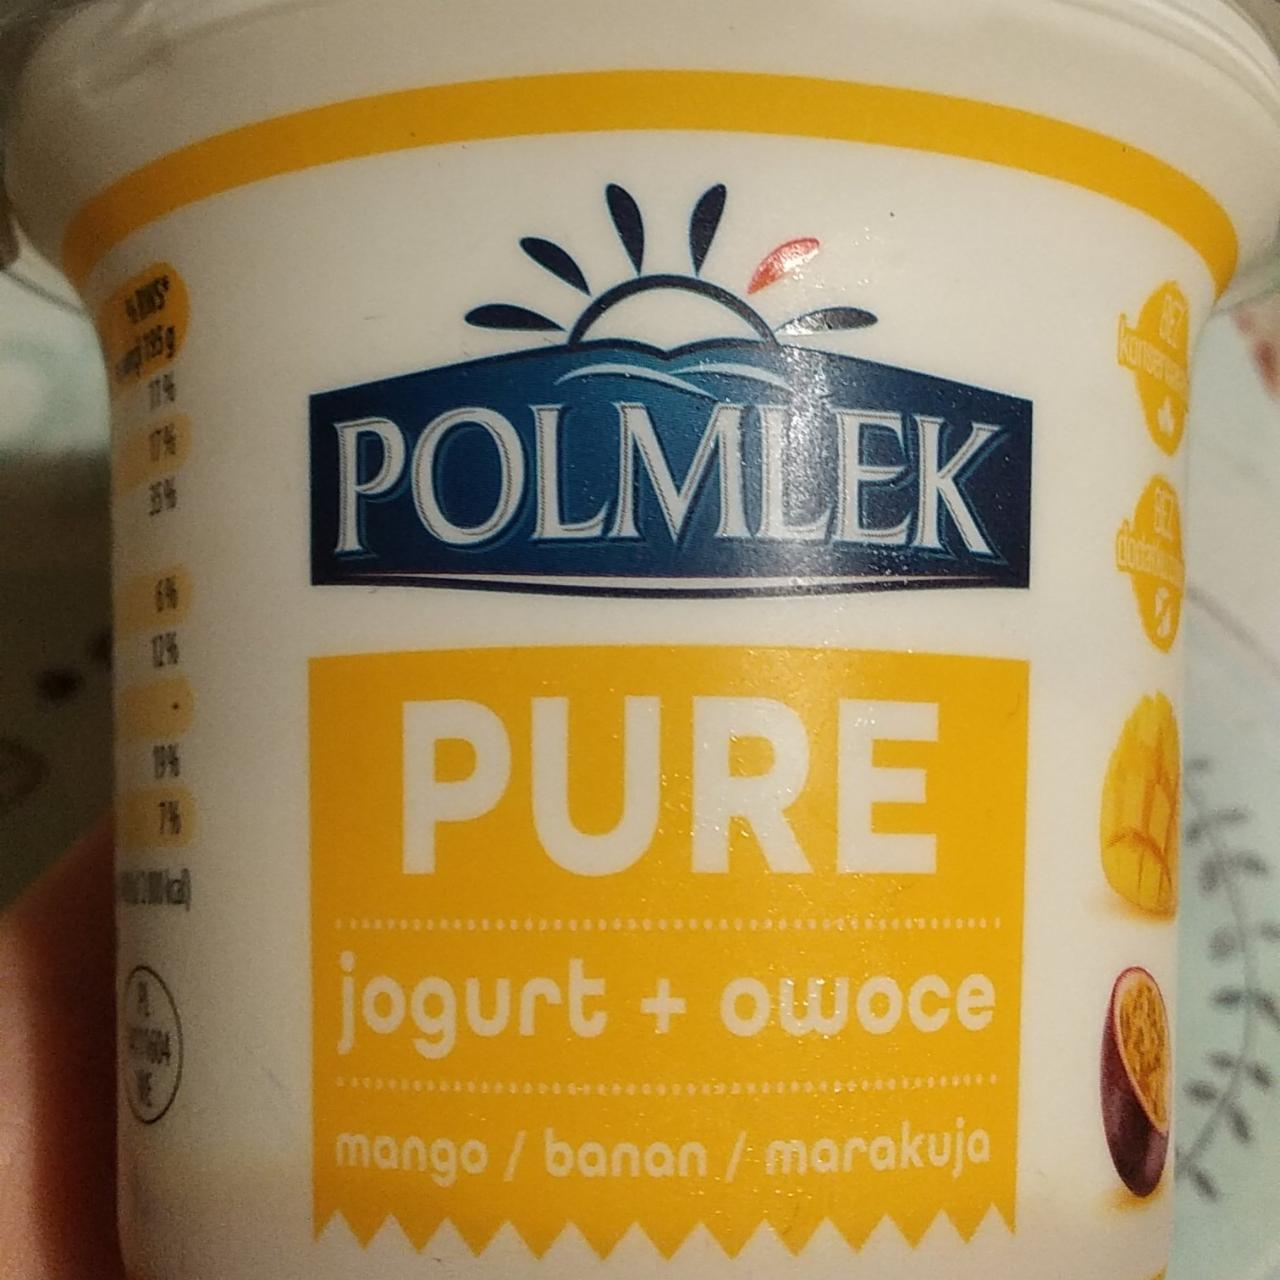 Fotografie - Pure jogurt + owoce mango banan marakuja Polmlek